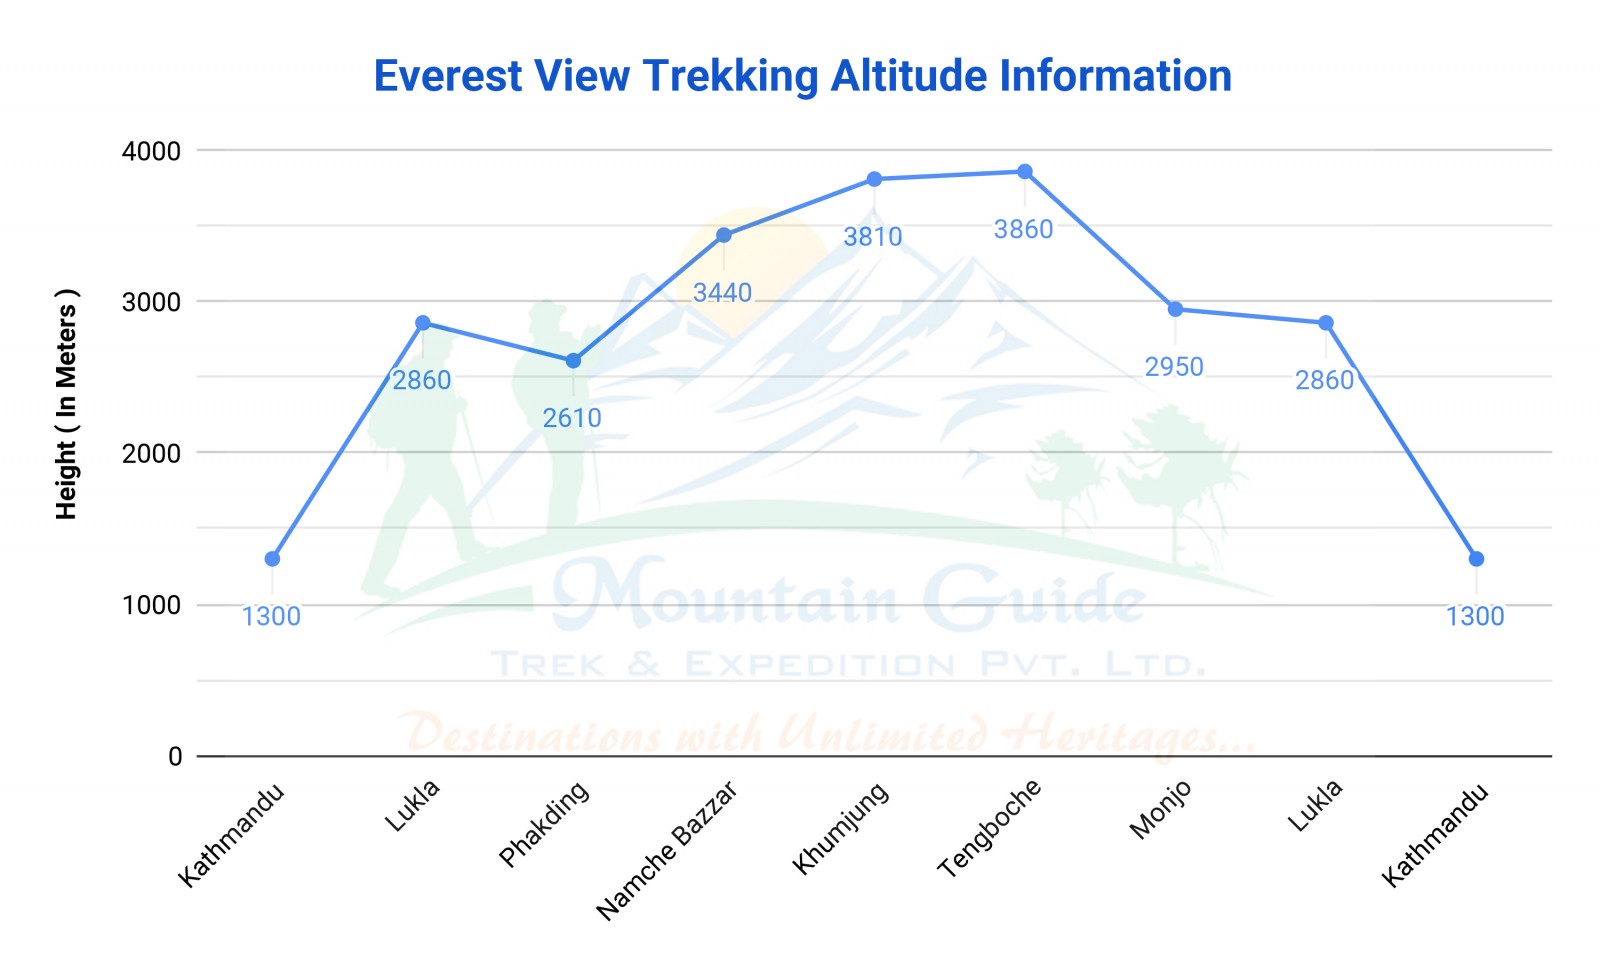 Gokyo Lake Trek | Altitude Information